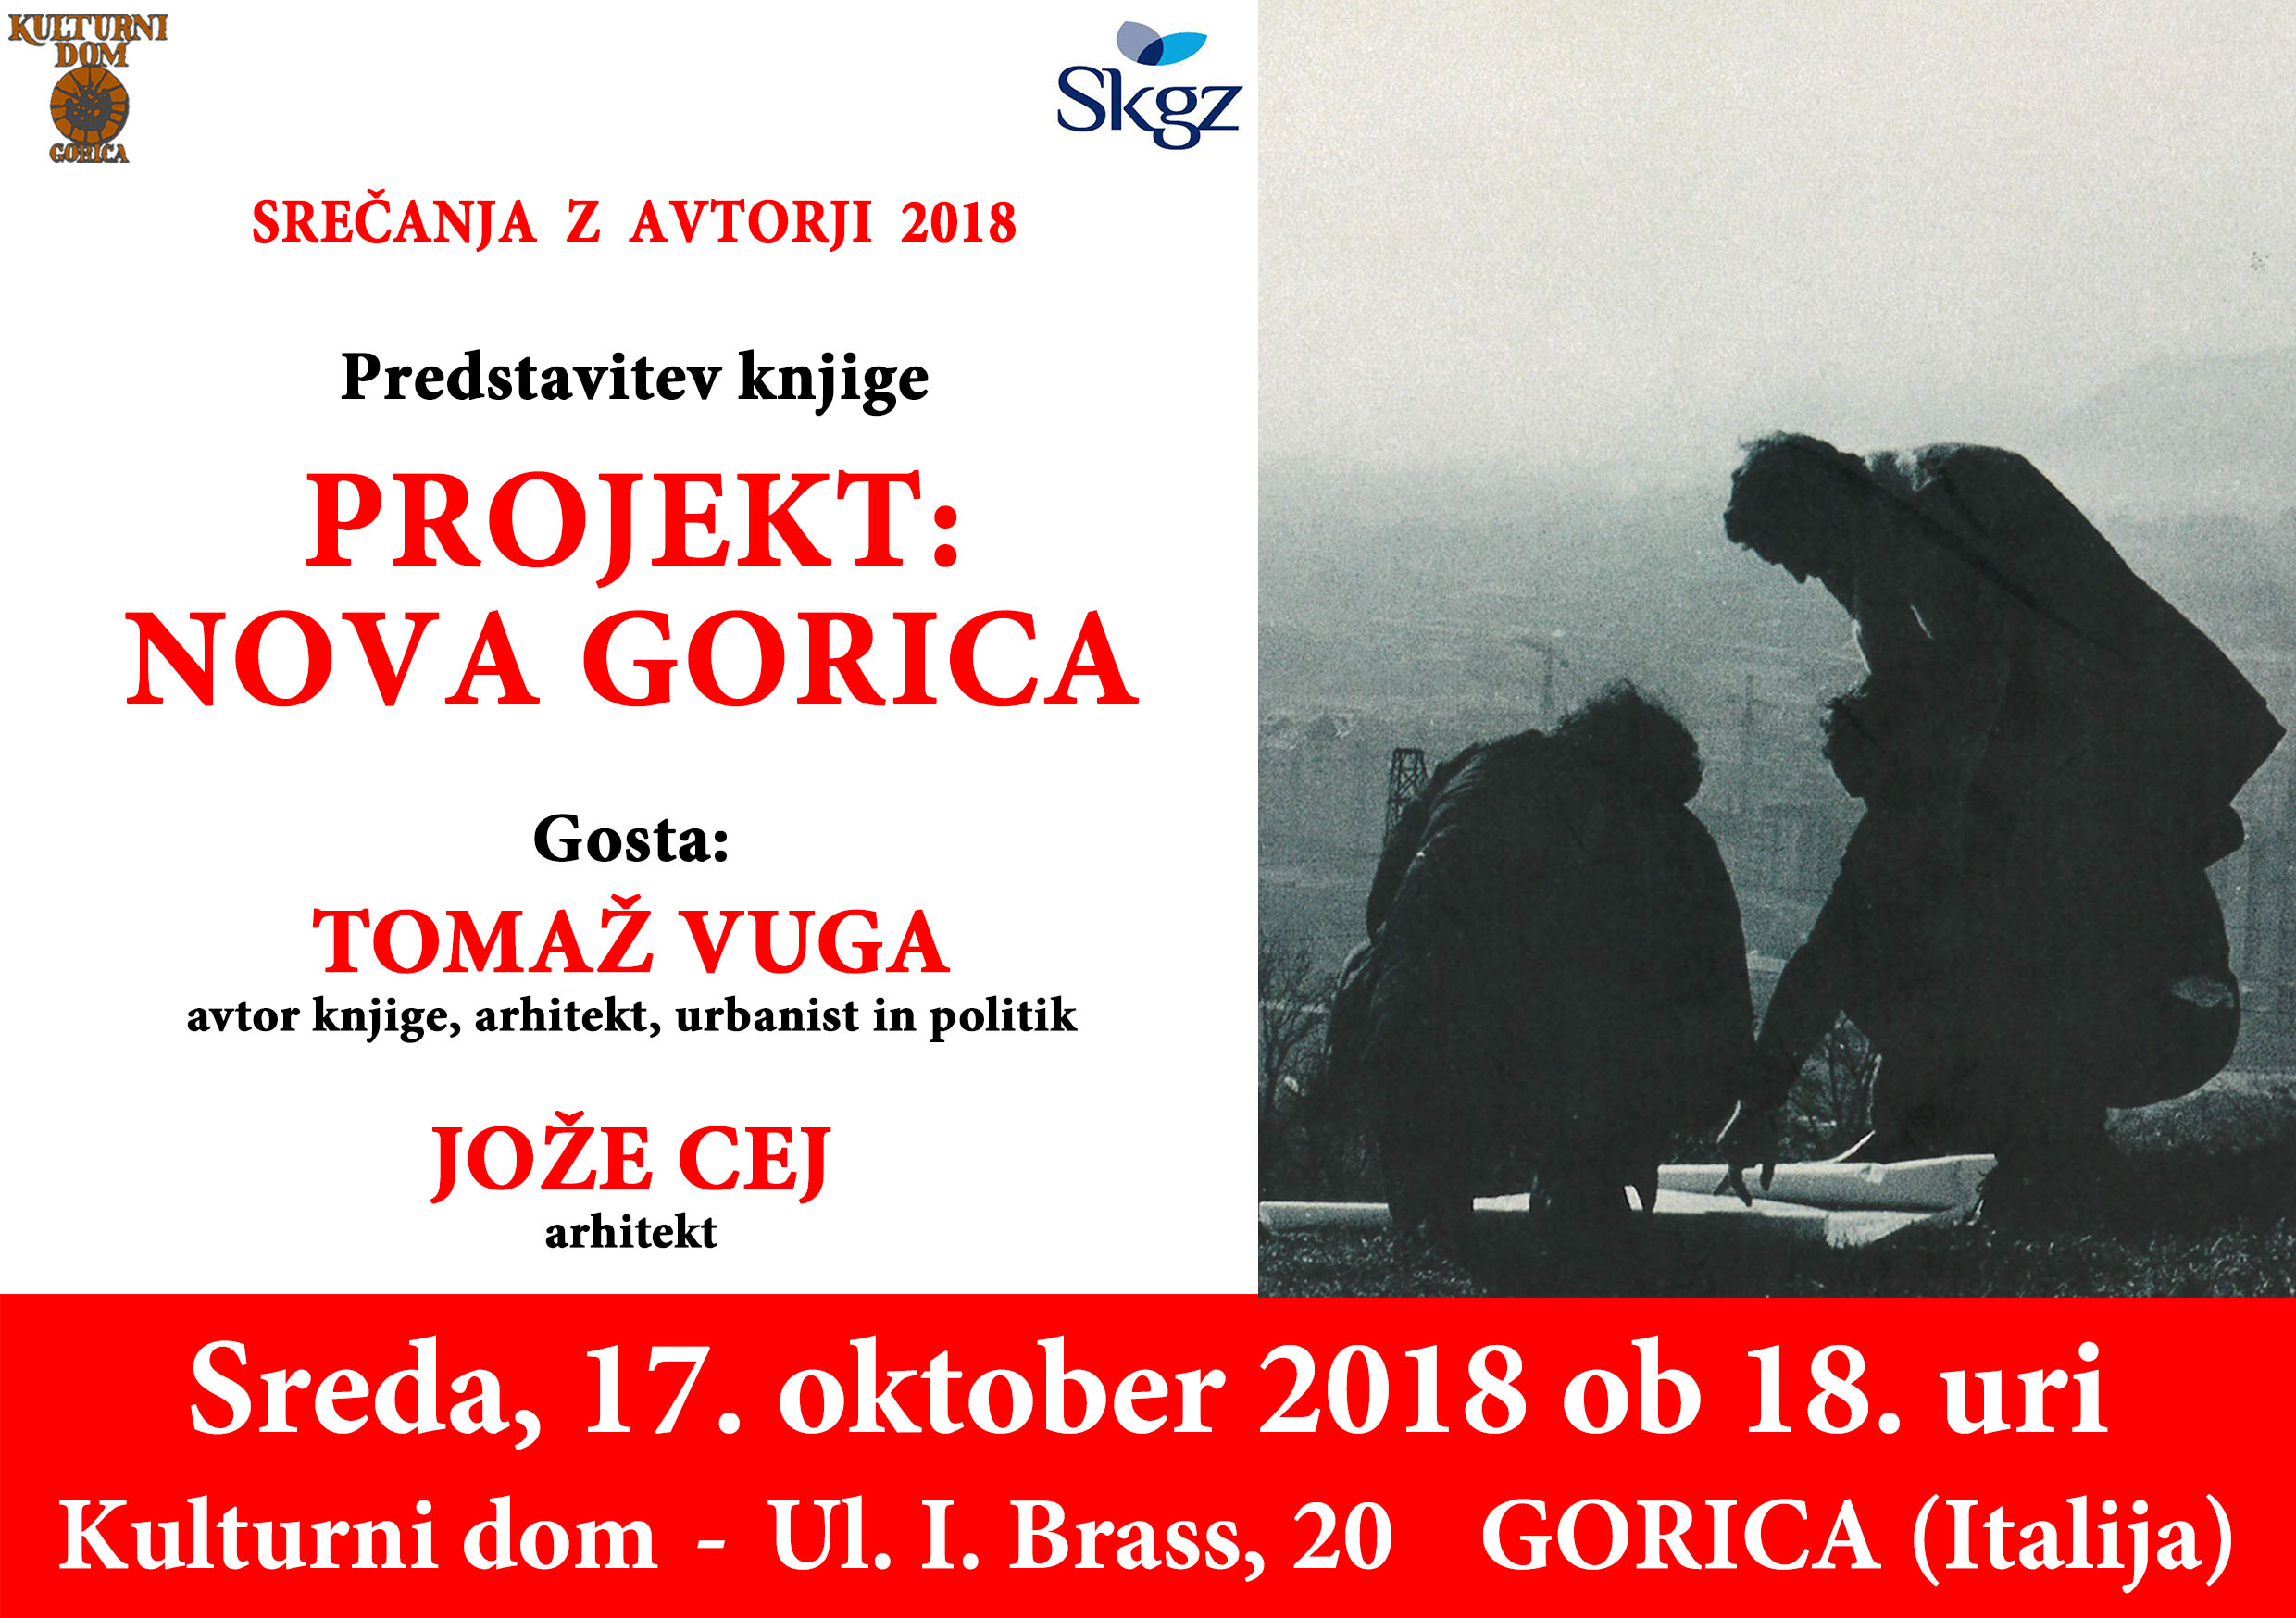 Projekt: Nova Gorica (Progetto: Nova Gorica)